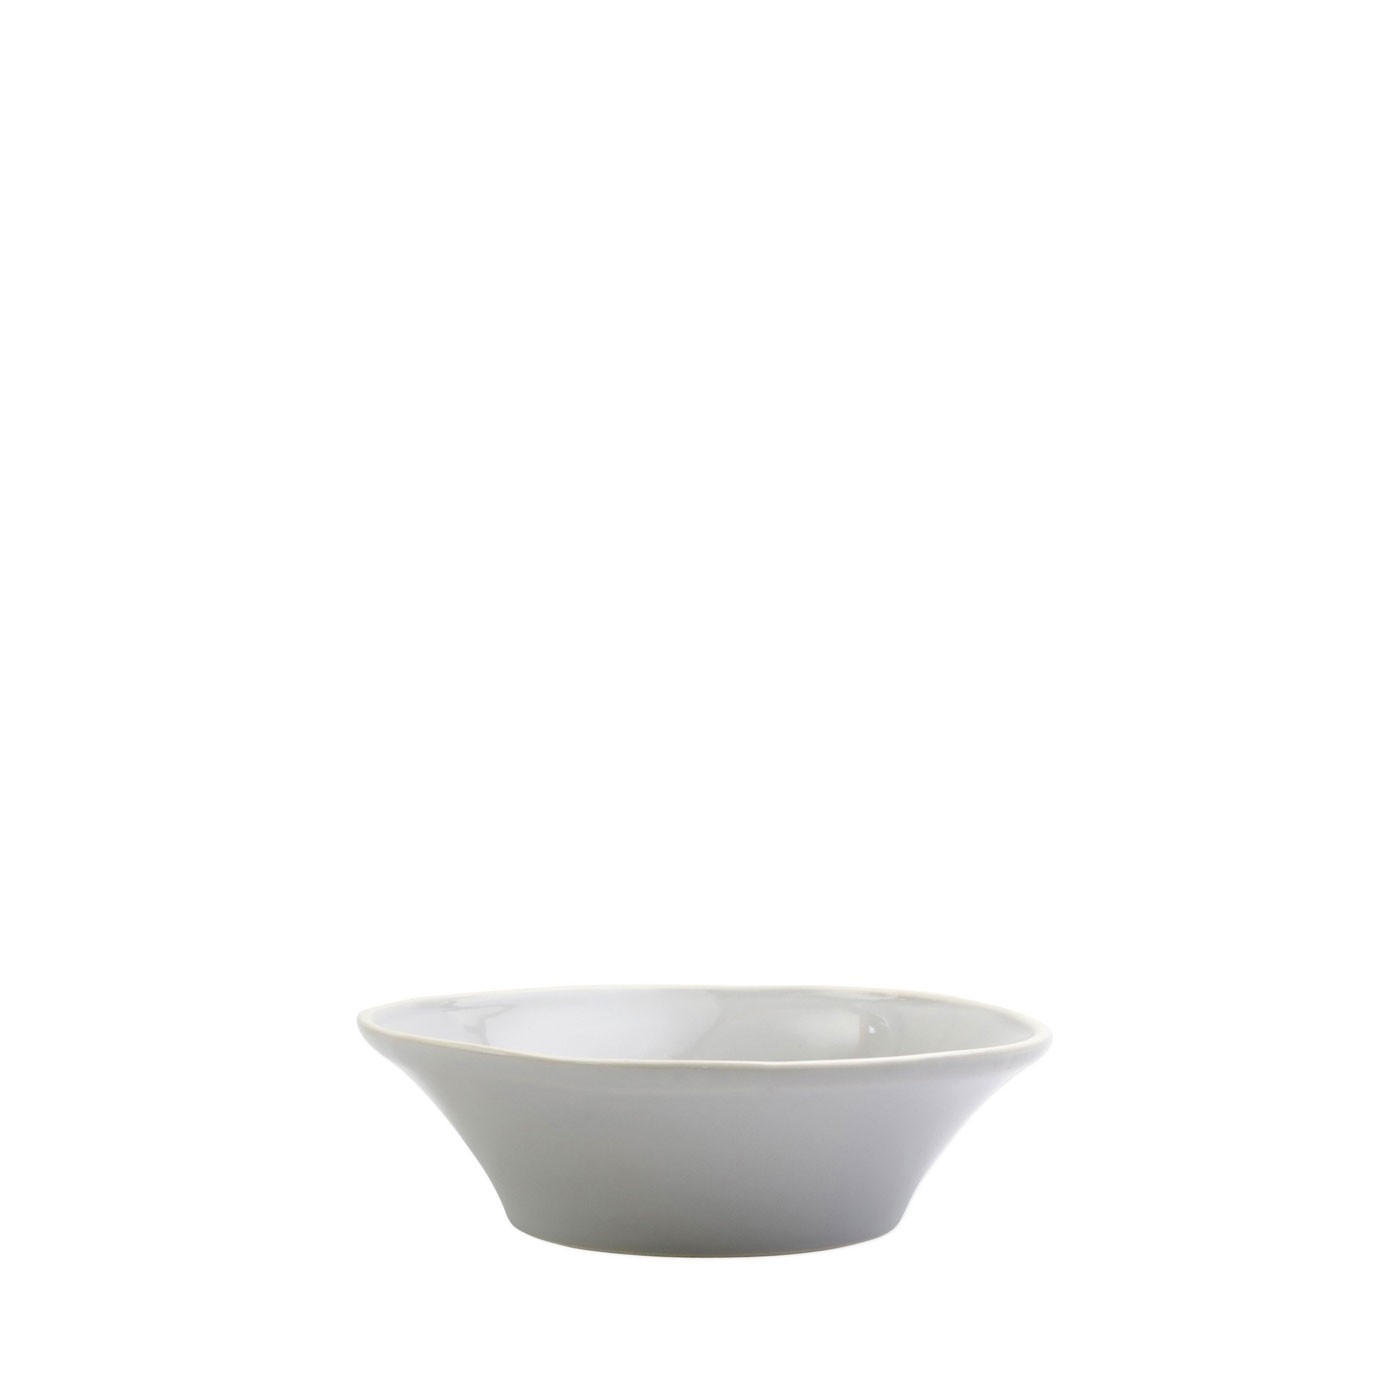 Chroma Light Gray Bowl - Vietri | Eataly.com